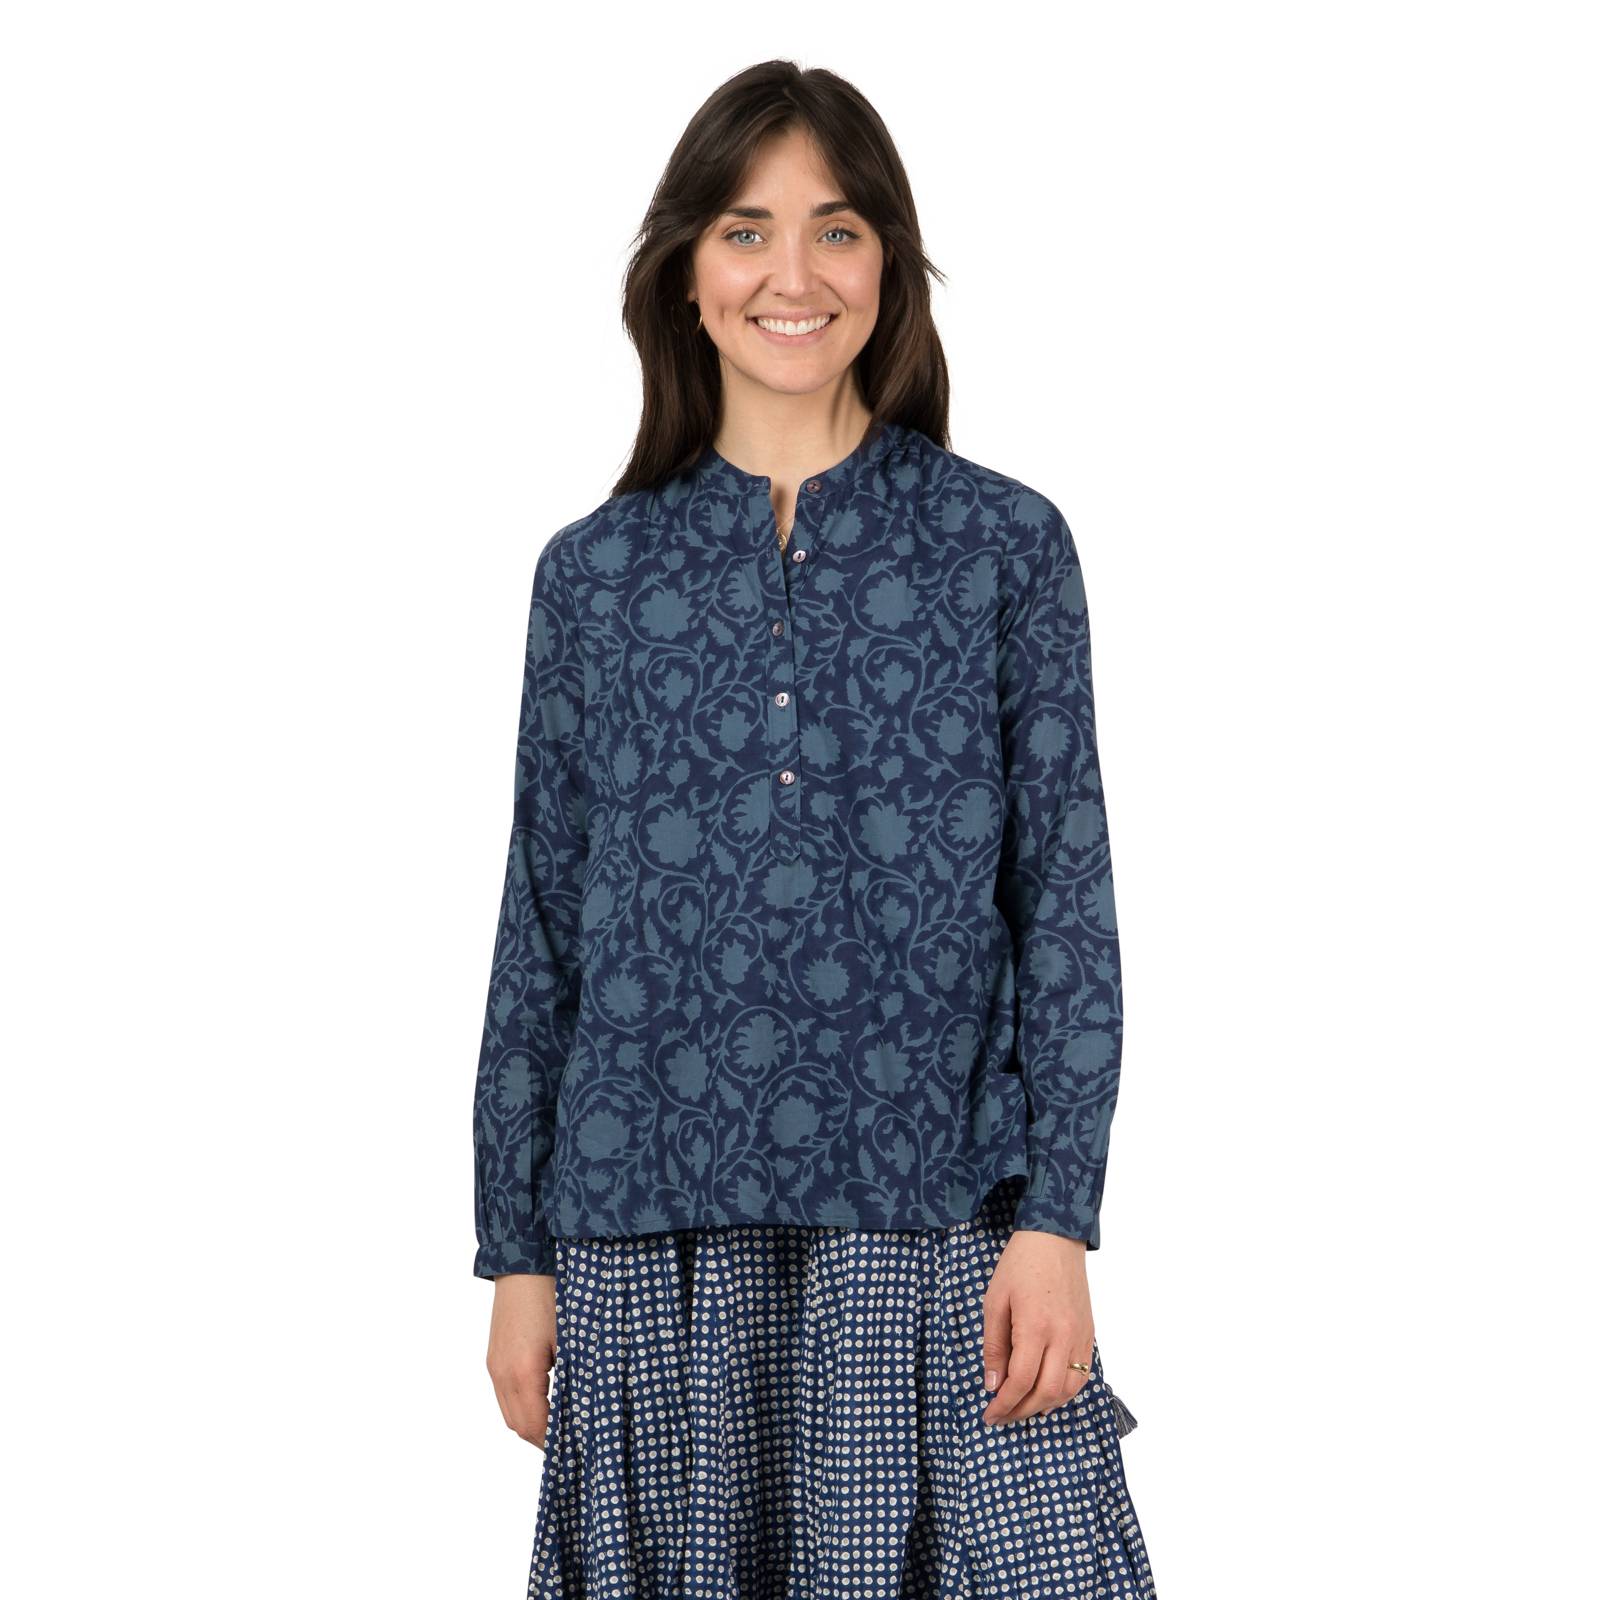 Chemises et blouses Chemise Helen Flore 100% Coton Bio Ethnique VT1606 Navy